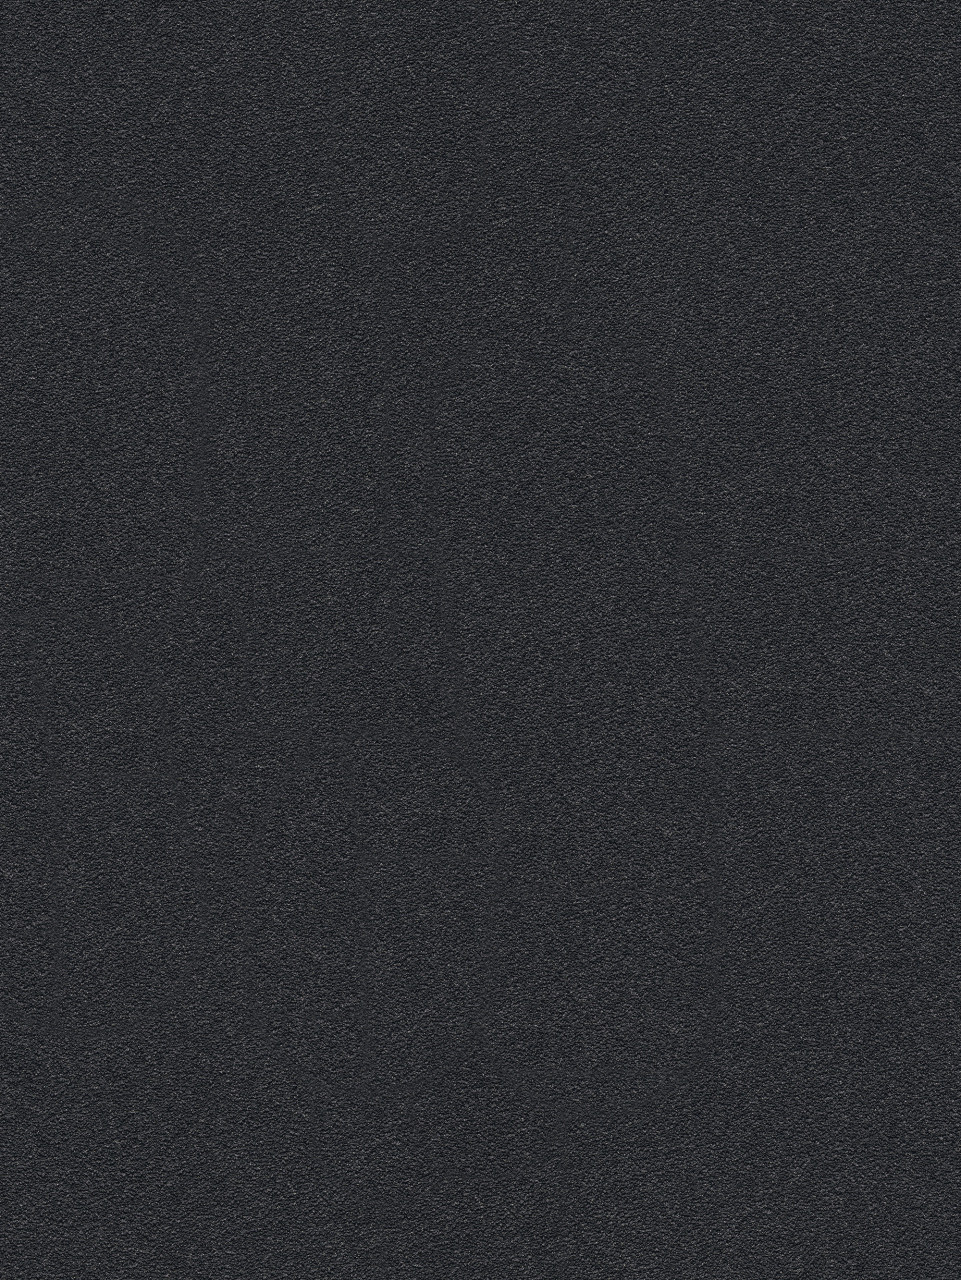 Erismann Vliestapete 6314-15 Crystal Colours uni schwarz 10,05 x 0,53 m von Erismann